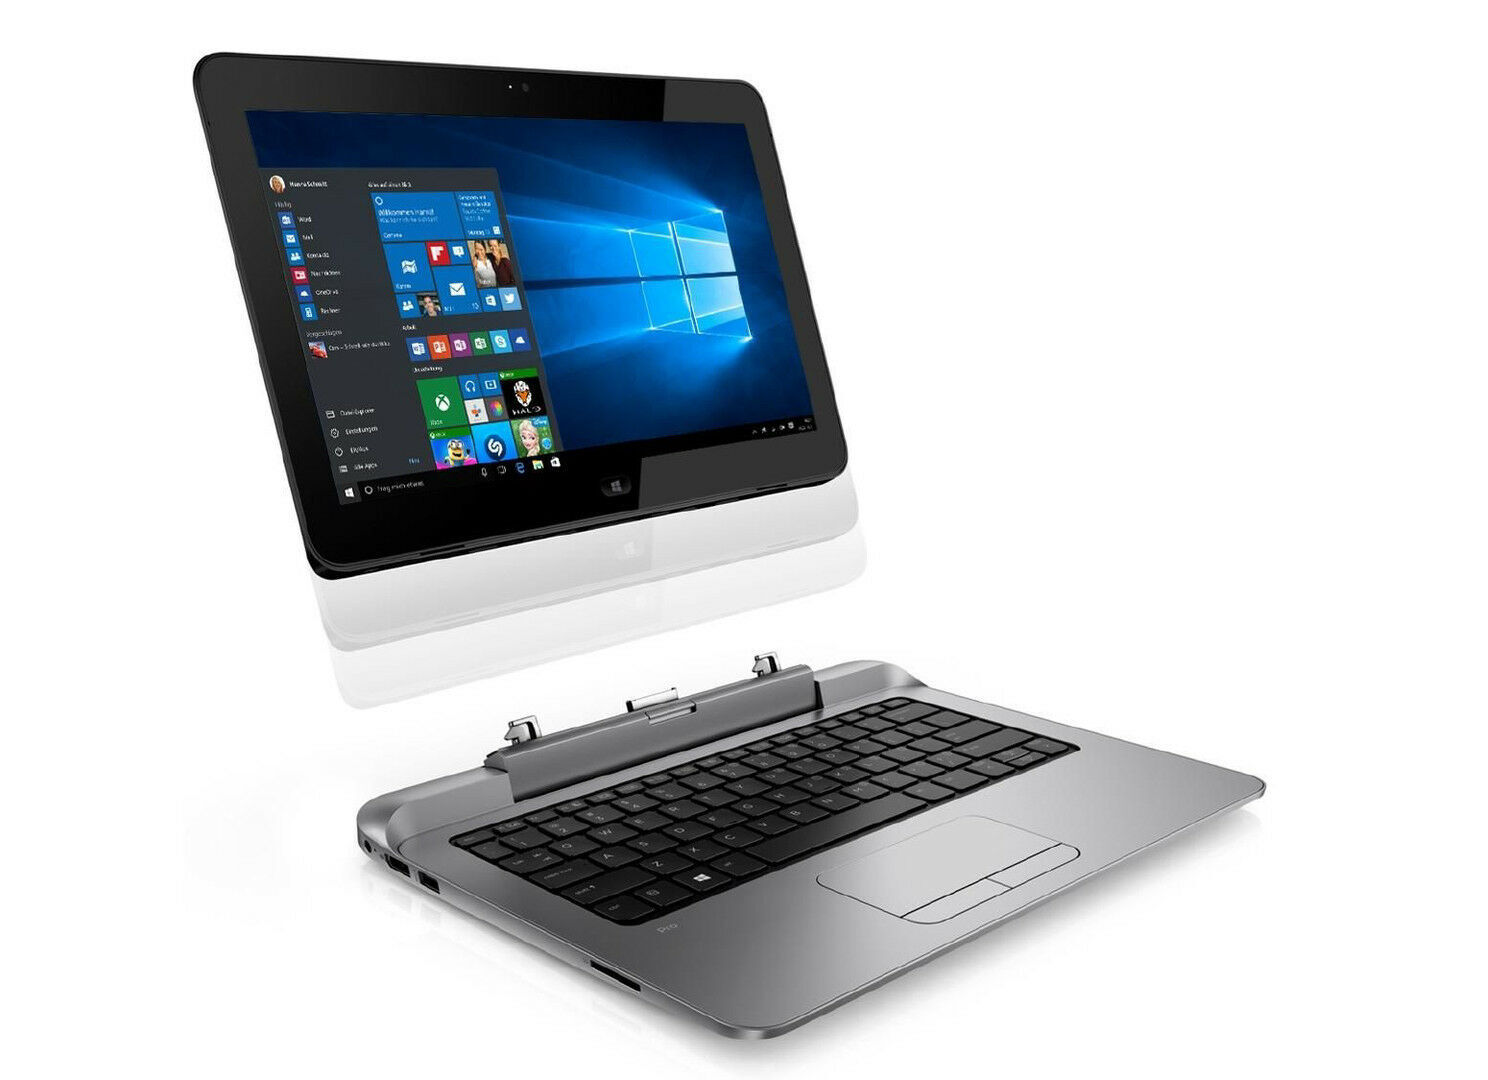 HP Pro X2 612 G1 Intel i5 4302Y 1.60Ghz 4GB RAM 128GB SSD 12.5" Tablet NO OS  - B Grade Image 1